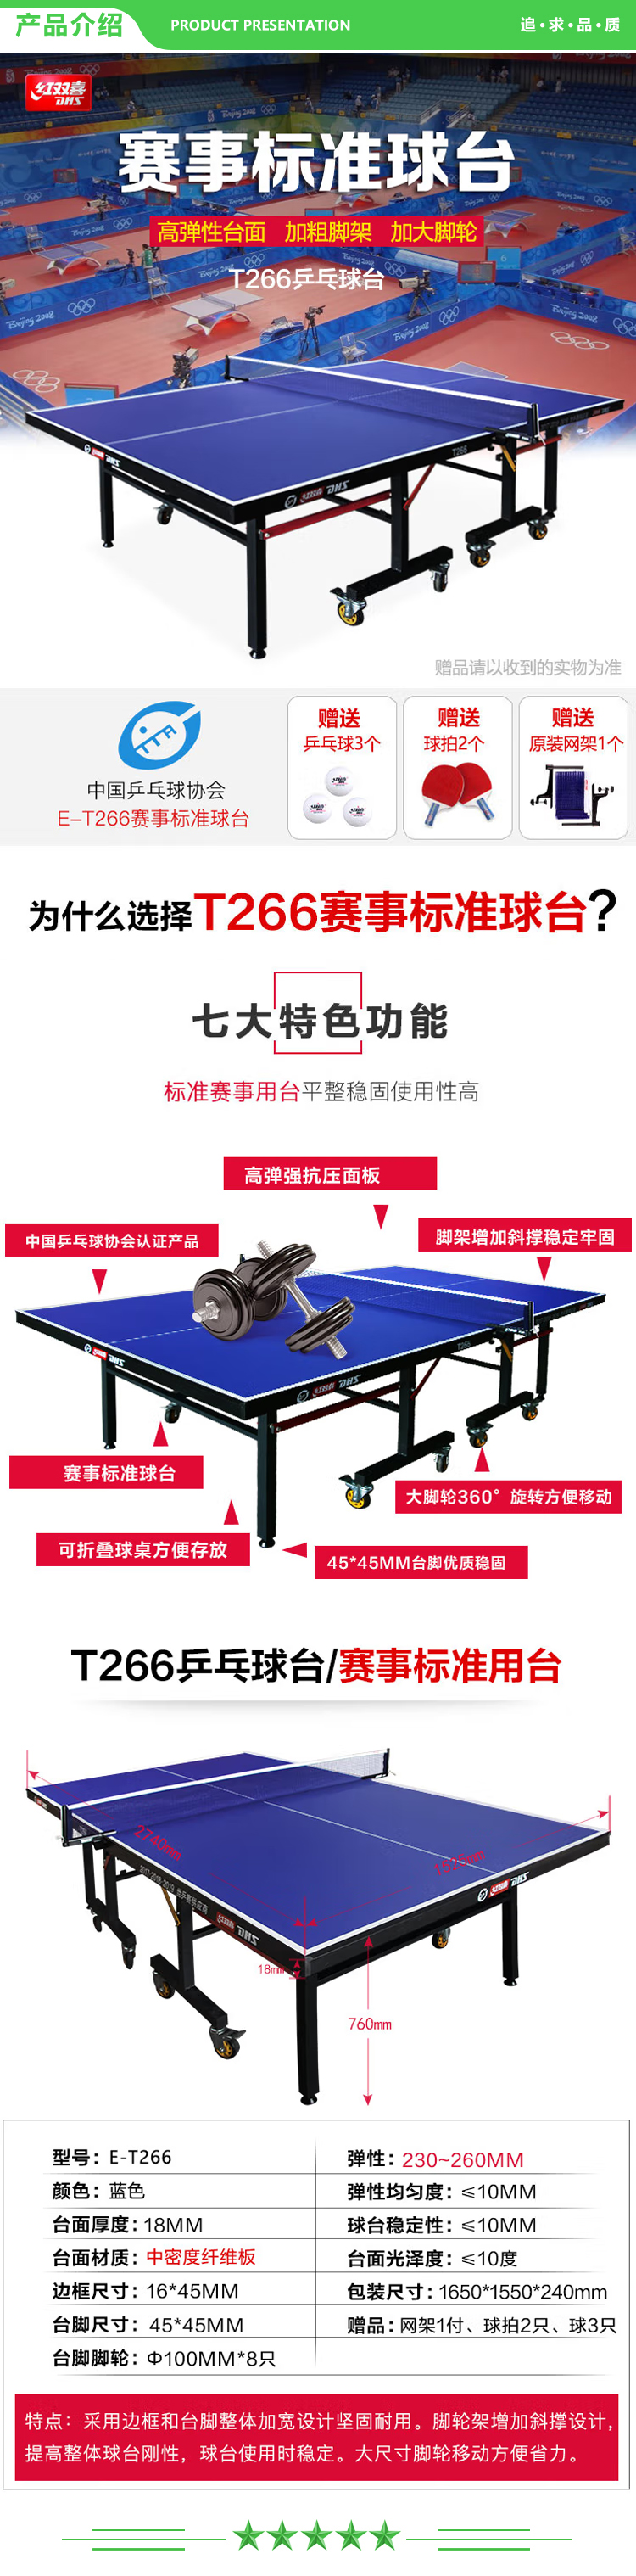 红双喜 DHS E-T266 专业比赛折叠移动乒乓球桌 球台(附网架、乒拍、乒球) .jpg